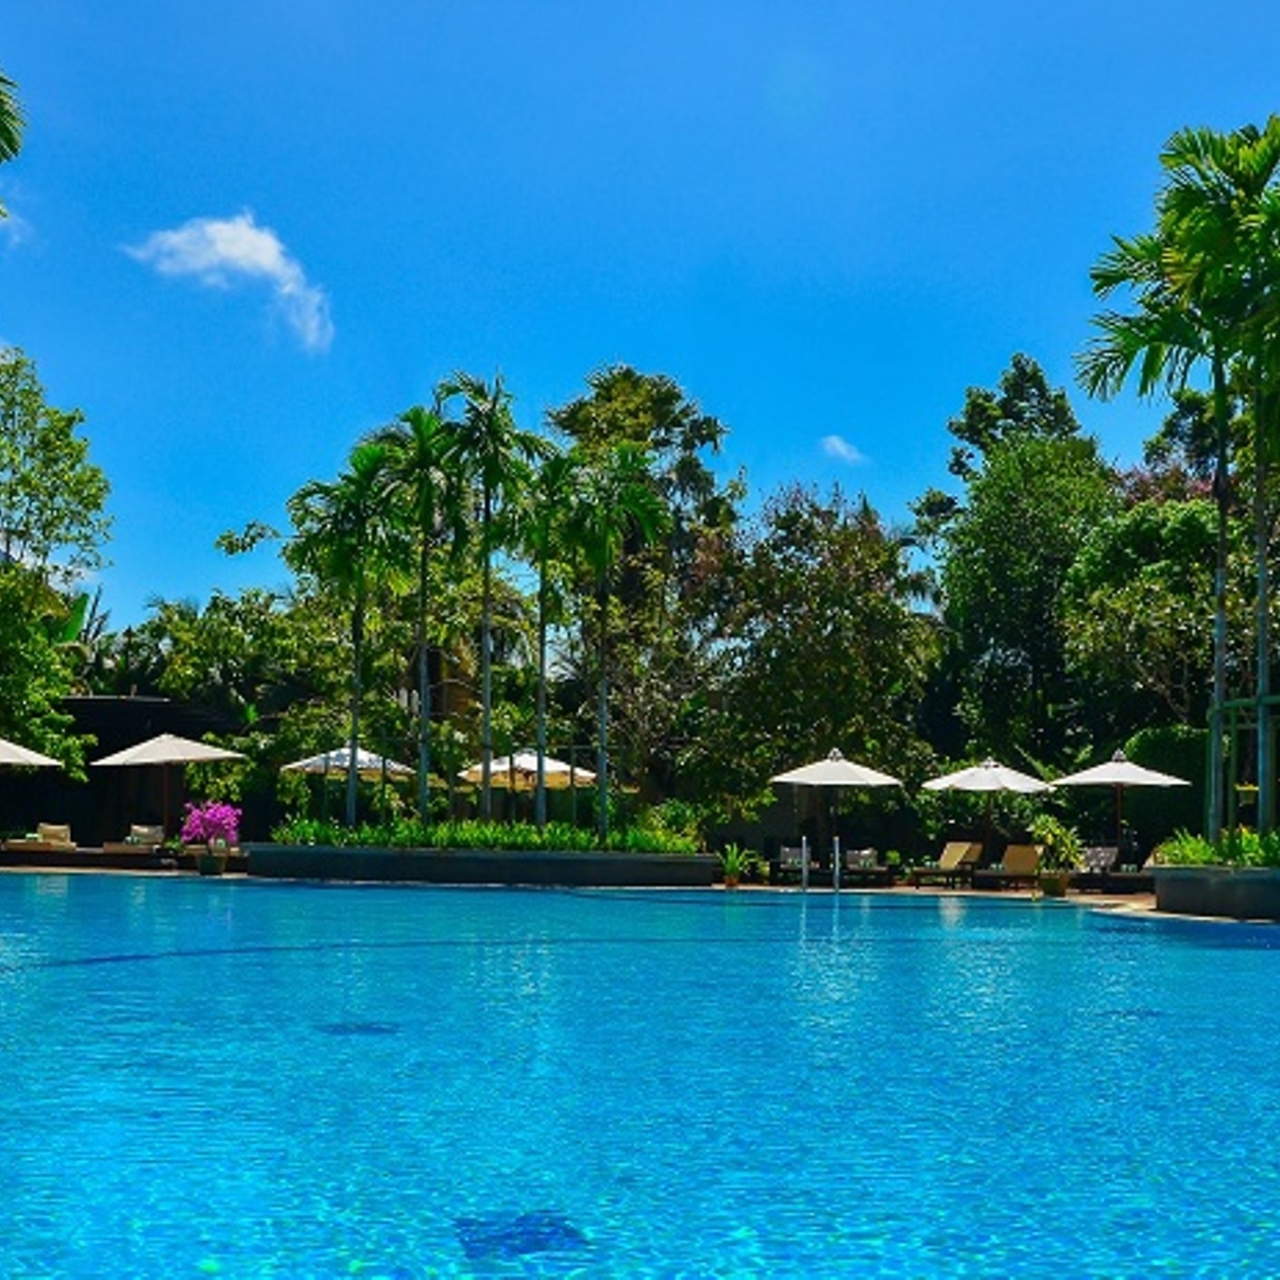 Chào mừng đến với khách sạn 5 sao Siem Reap, nơi bạn được tận hưởng những dịch vụ tuyệt vời nhất trong môi trường đẳng cấp và sang trọng. Hình ảnh này cho thấy không gian sang trọng và đẳng cấp của khách sạn, hứa hẹn sẽ mang đến cho bạn một trải nghiệm nghỉ dưỡng tuyệt vời. 